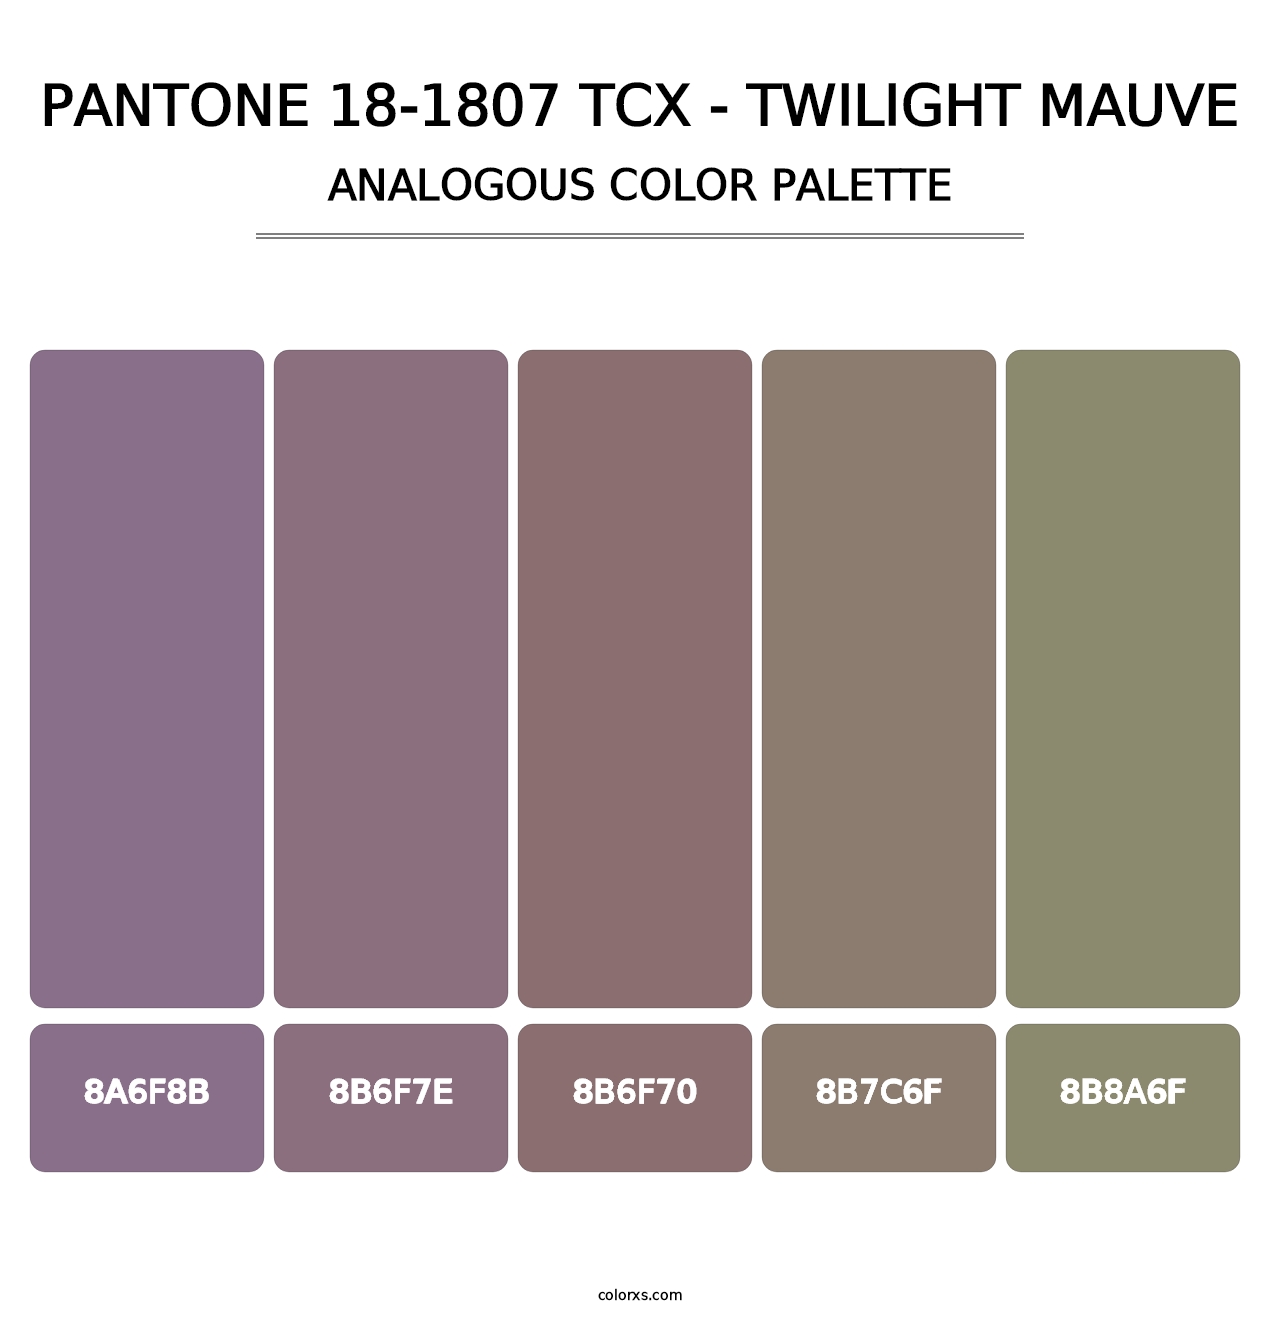 PANTONE 18-1807 TCX - Twilight Mauve - Analogous Color Palette